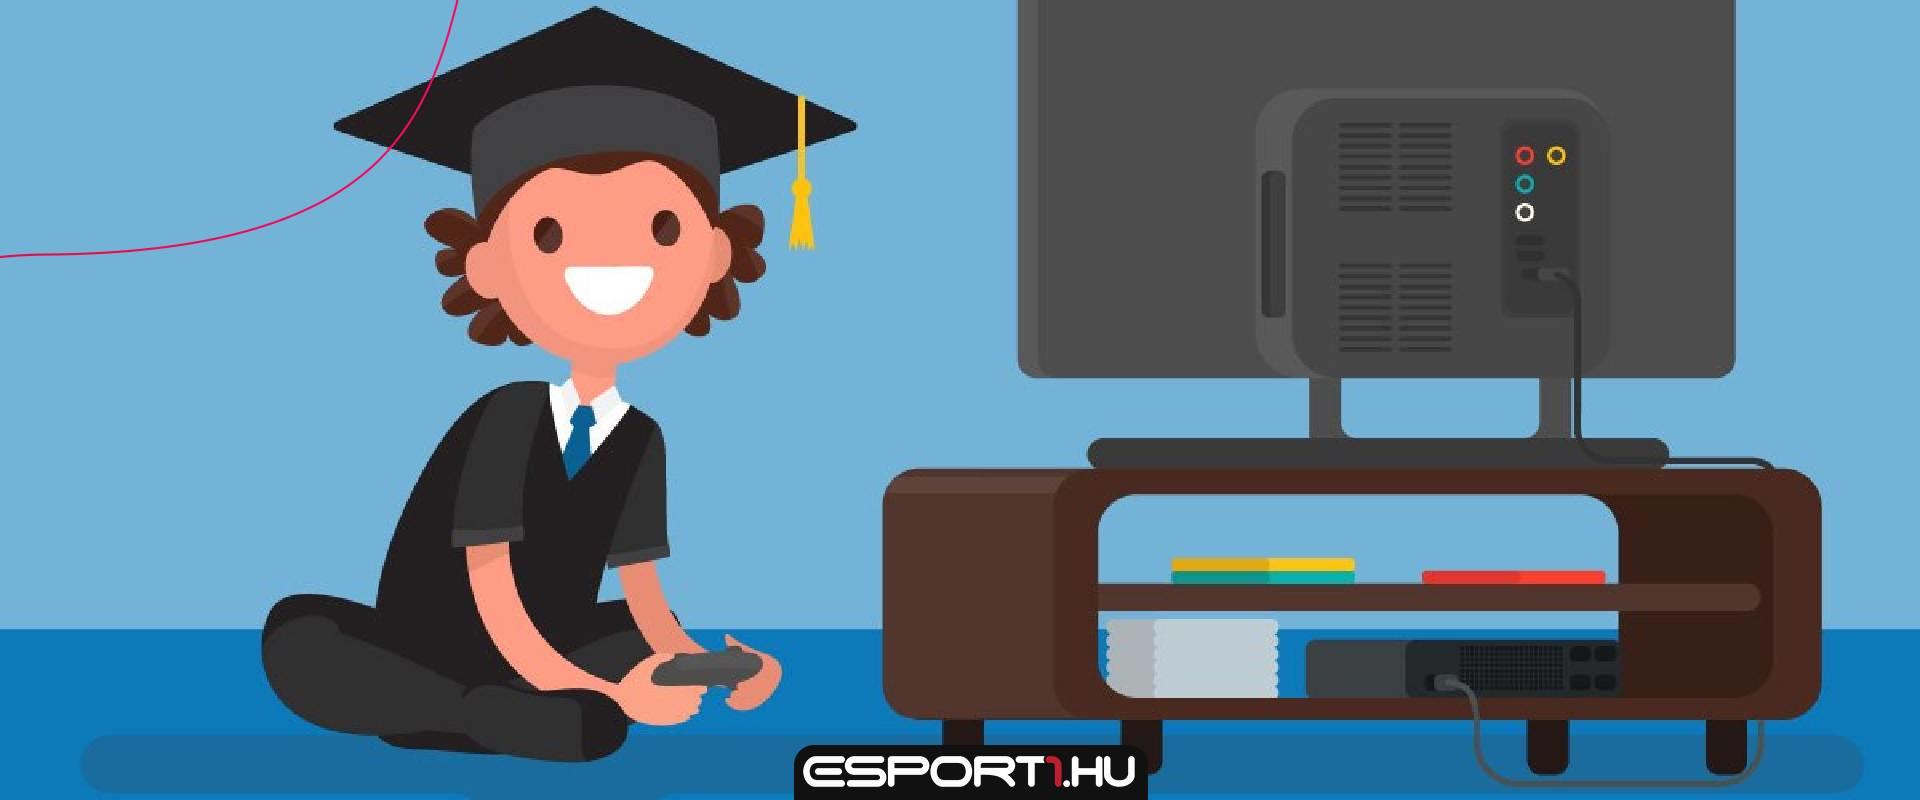 Az e-sport bizonyítottan segít a diákoknak a jobb tanulmányi teljesítmény elérésében